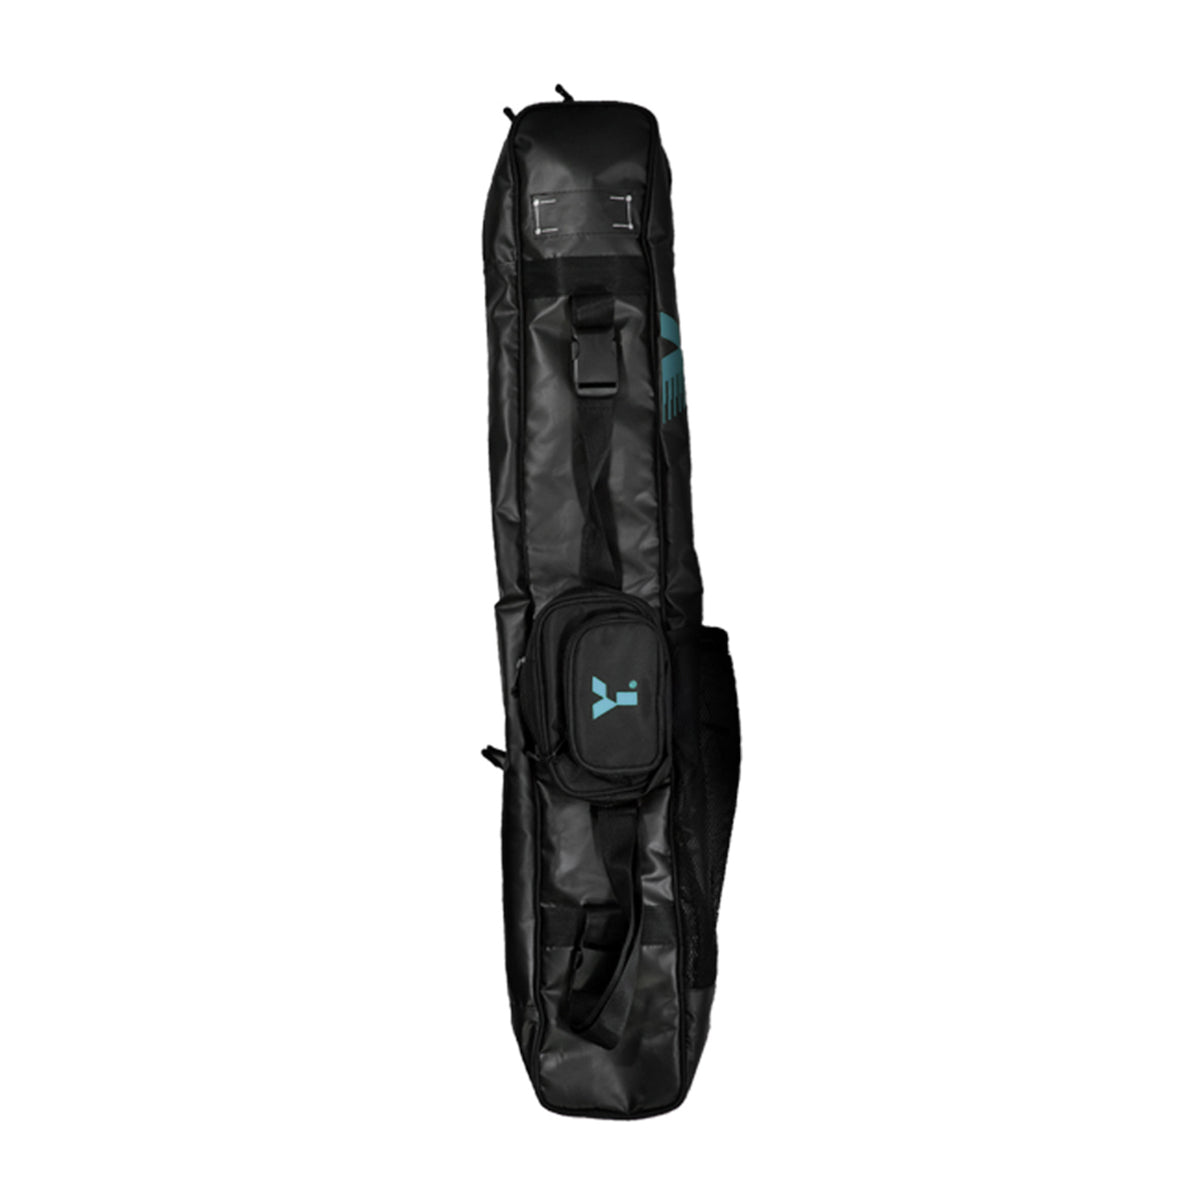 Y1 V2 Hockey Stick Bag: Black/Teal